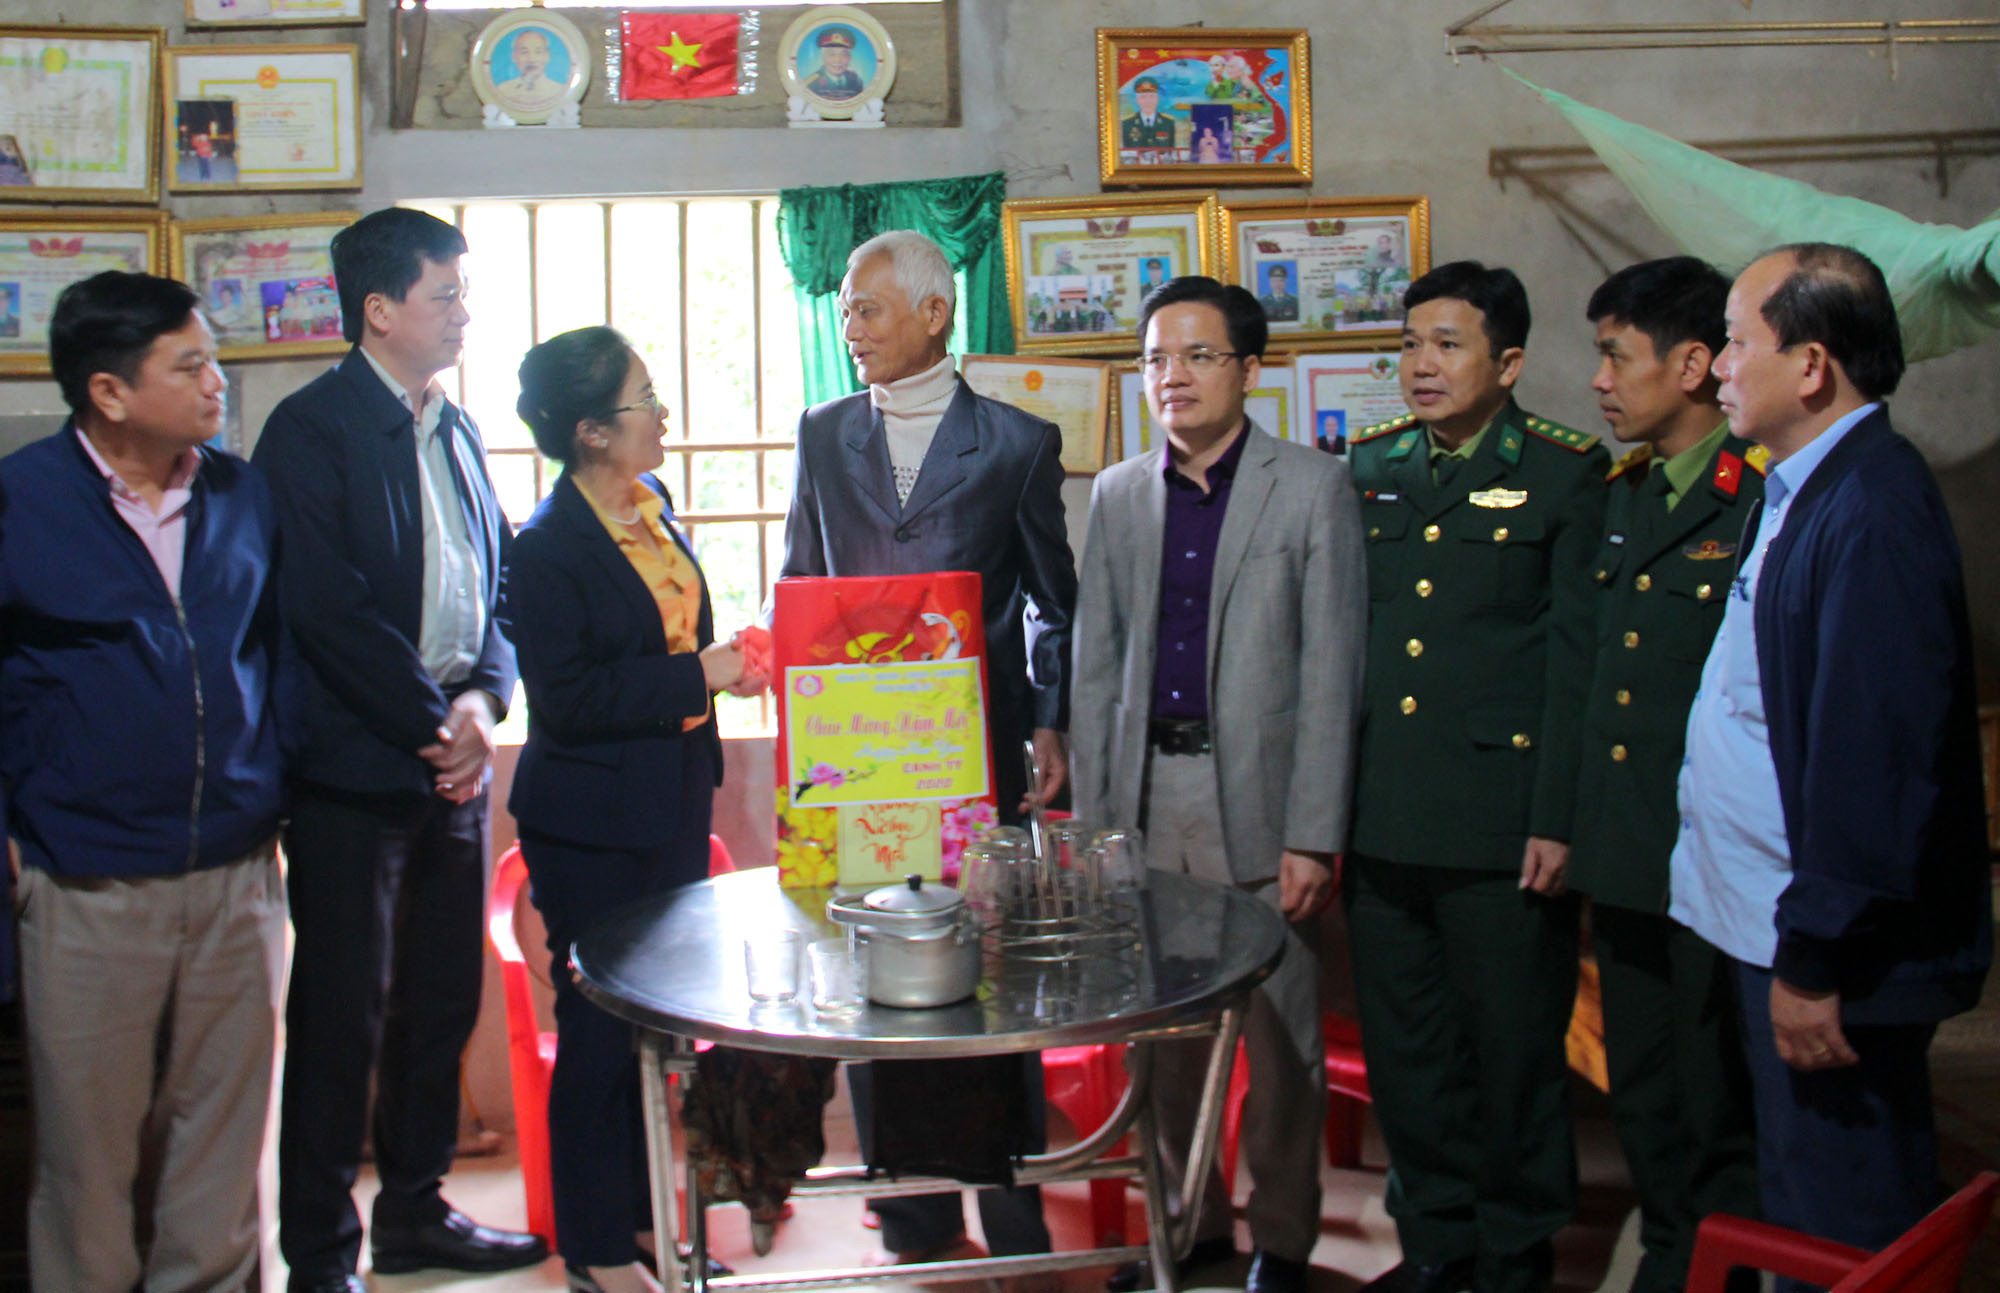 Đoàn đến thăm hộ gia đình thương binh 2/4 La Văn Thức (sinh năm 1950) tại bản Kẻ Mẻ (xã Mậu Đức, huyện Con Cuông). Ảnh: Thanh Quỳnh